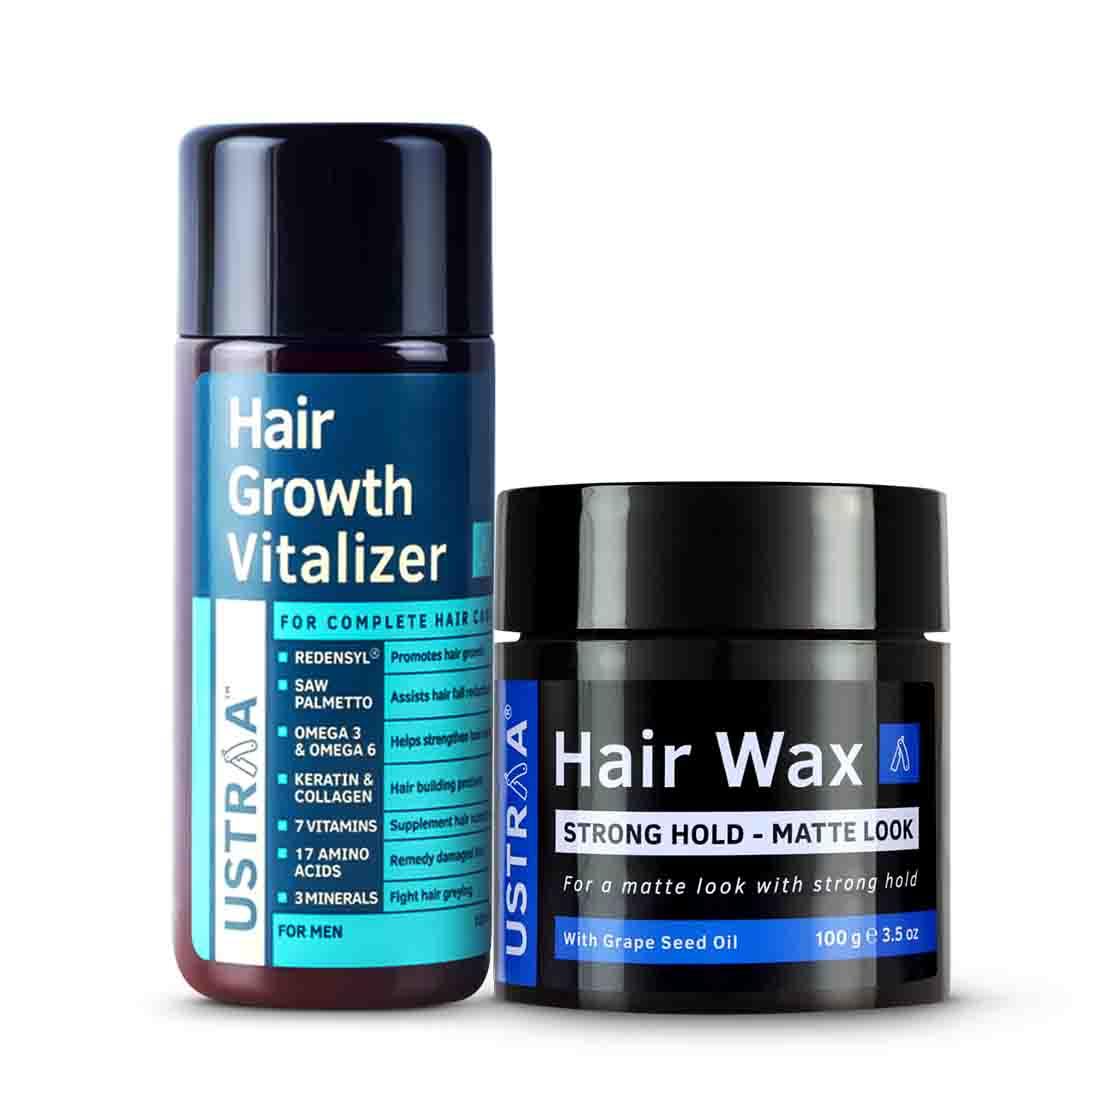 Hair Growth Vitalizer & Hair Wax (Matte Look)